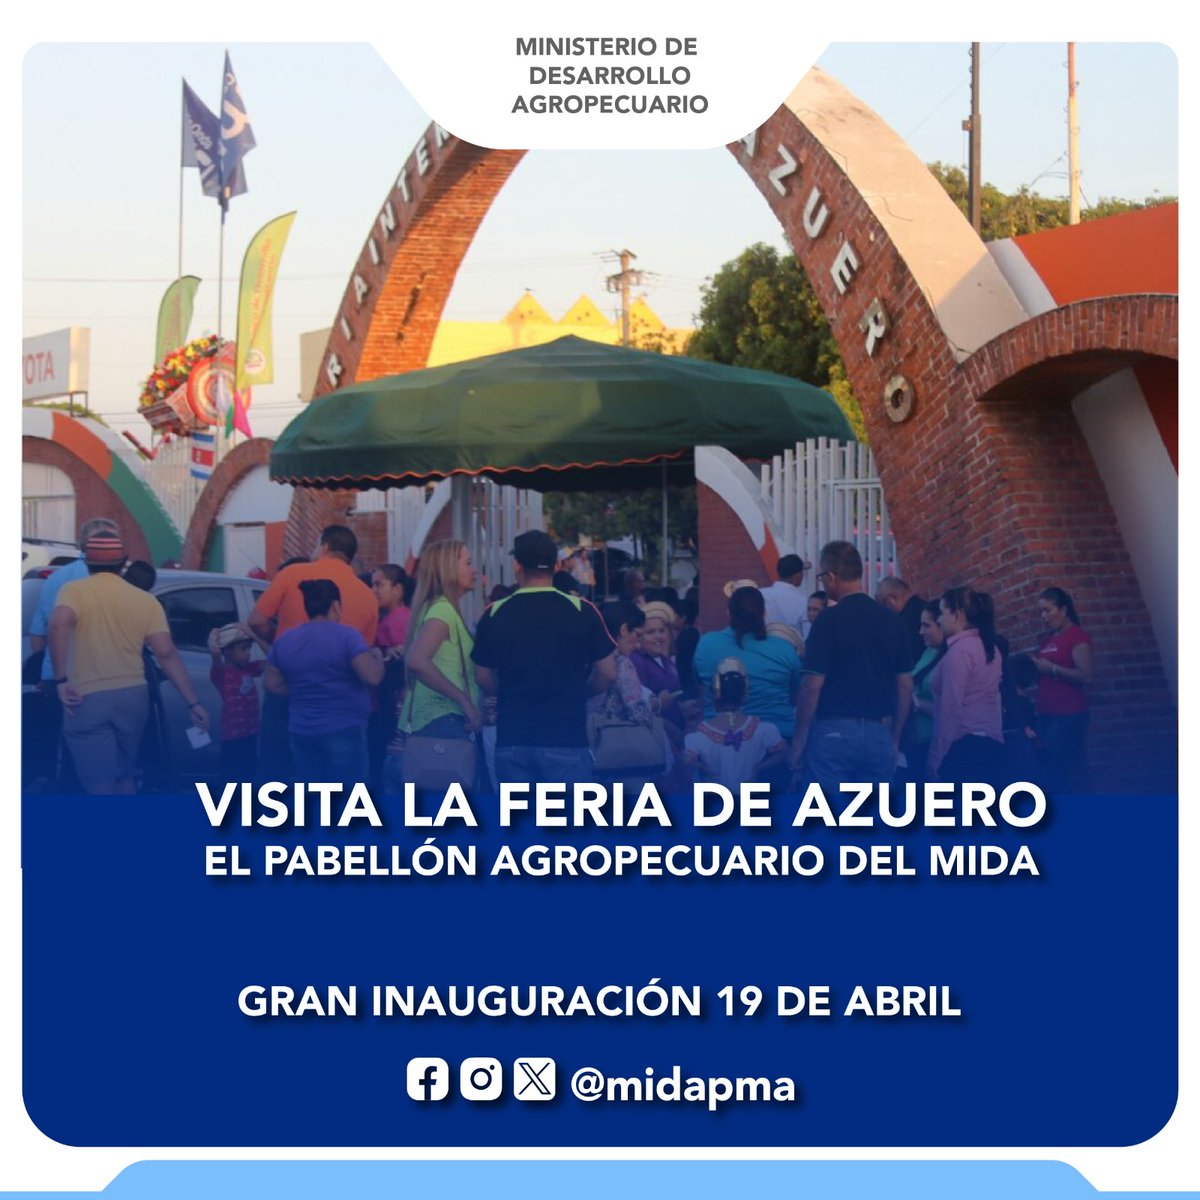 📍Los Santos | Le invitamos a participar de la Feria Internacional de Azuero, un evento tradicional que enmarca nuestras tradiciones e impulsa el turismo y la economía de la región.